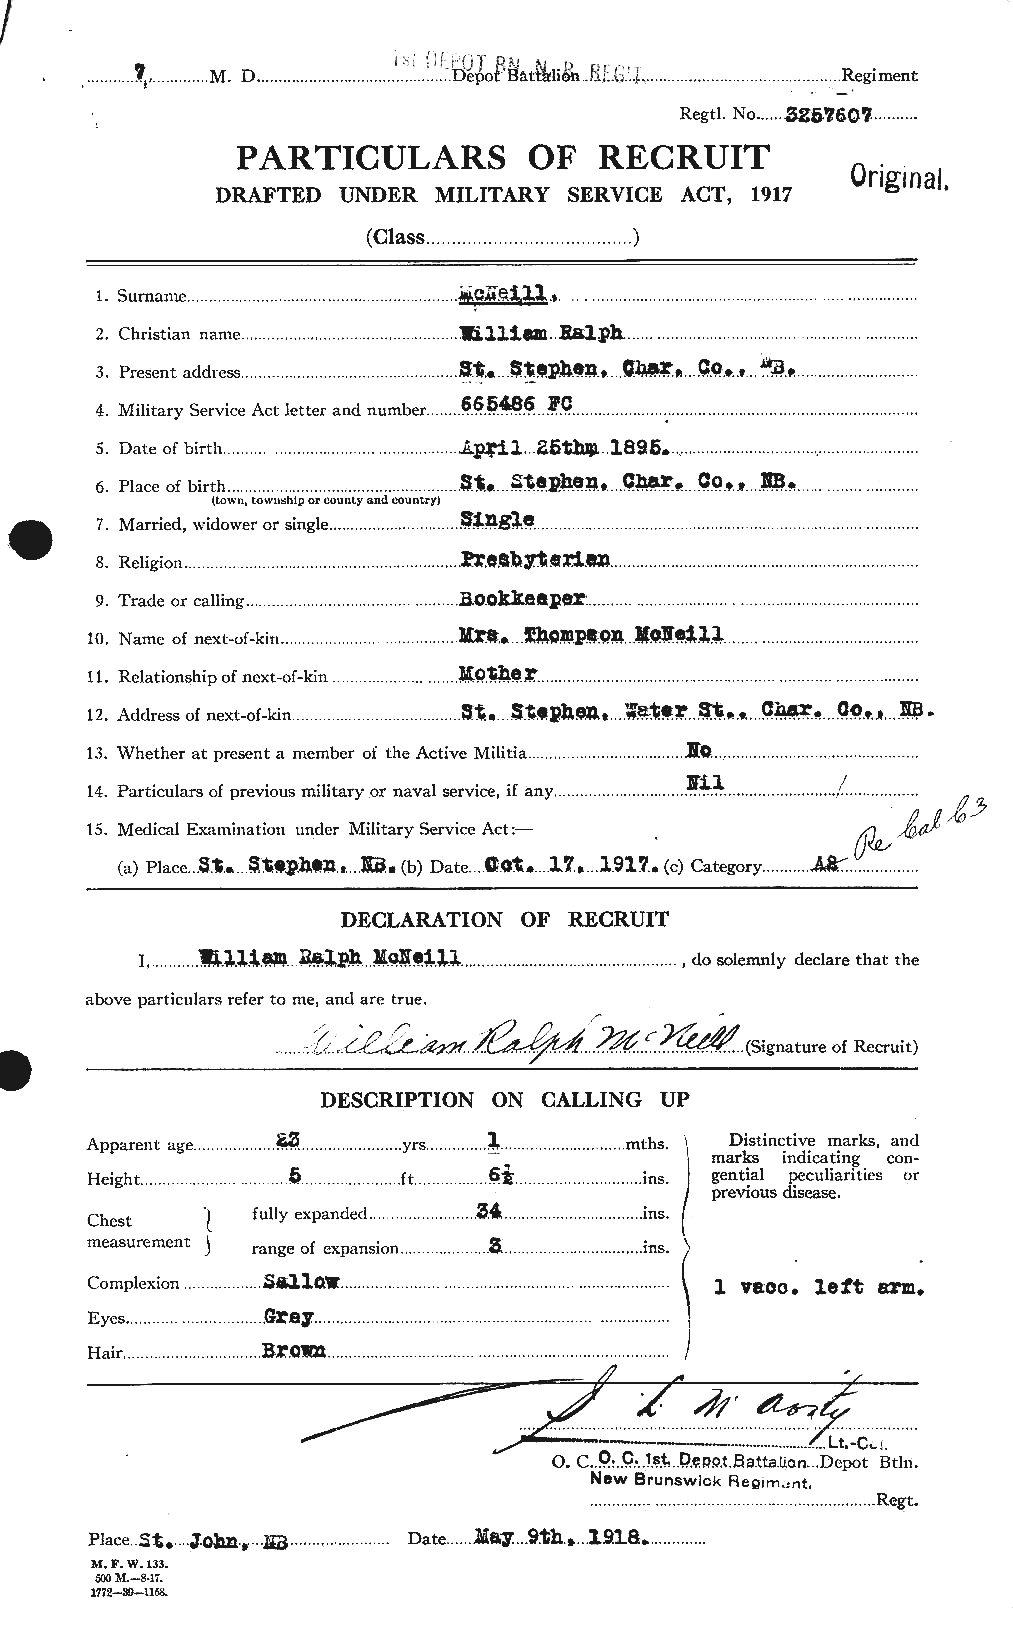 Dossiers du Personnel de la Première Guerre mondiale - CEC 539070a